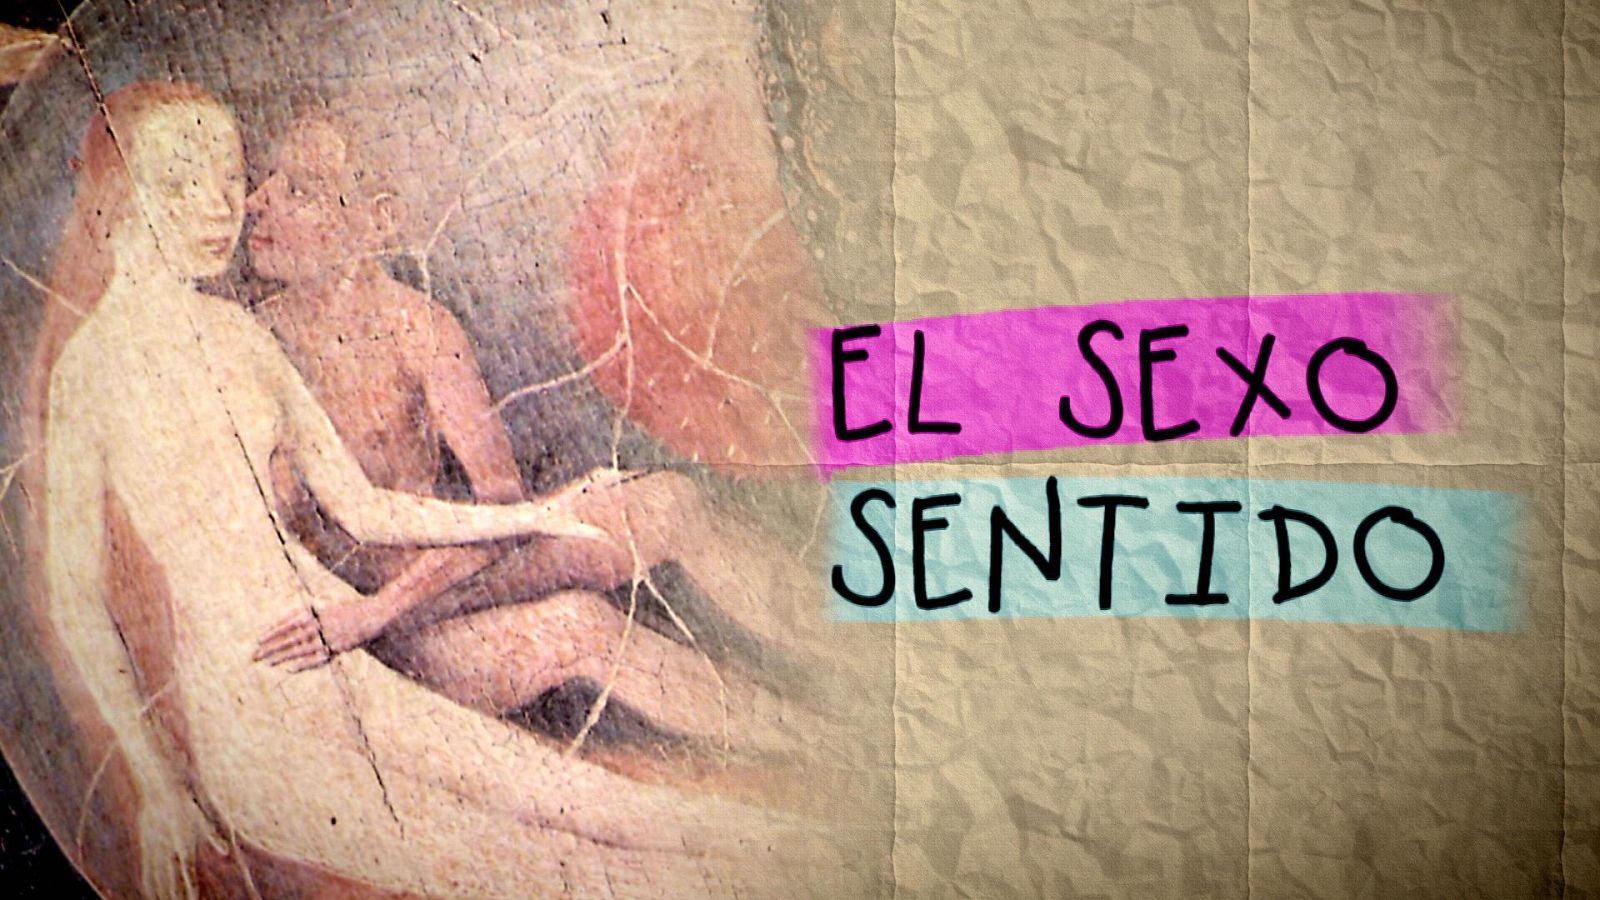 Cabecera del documental 'El sexo sentido'